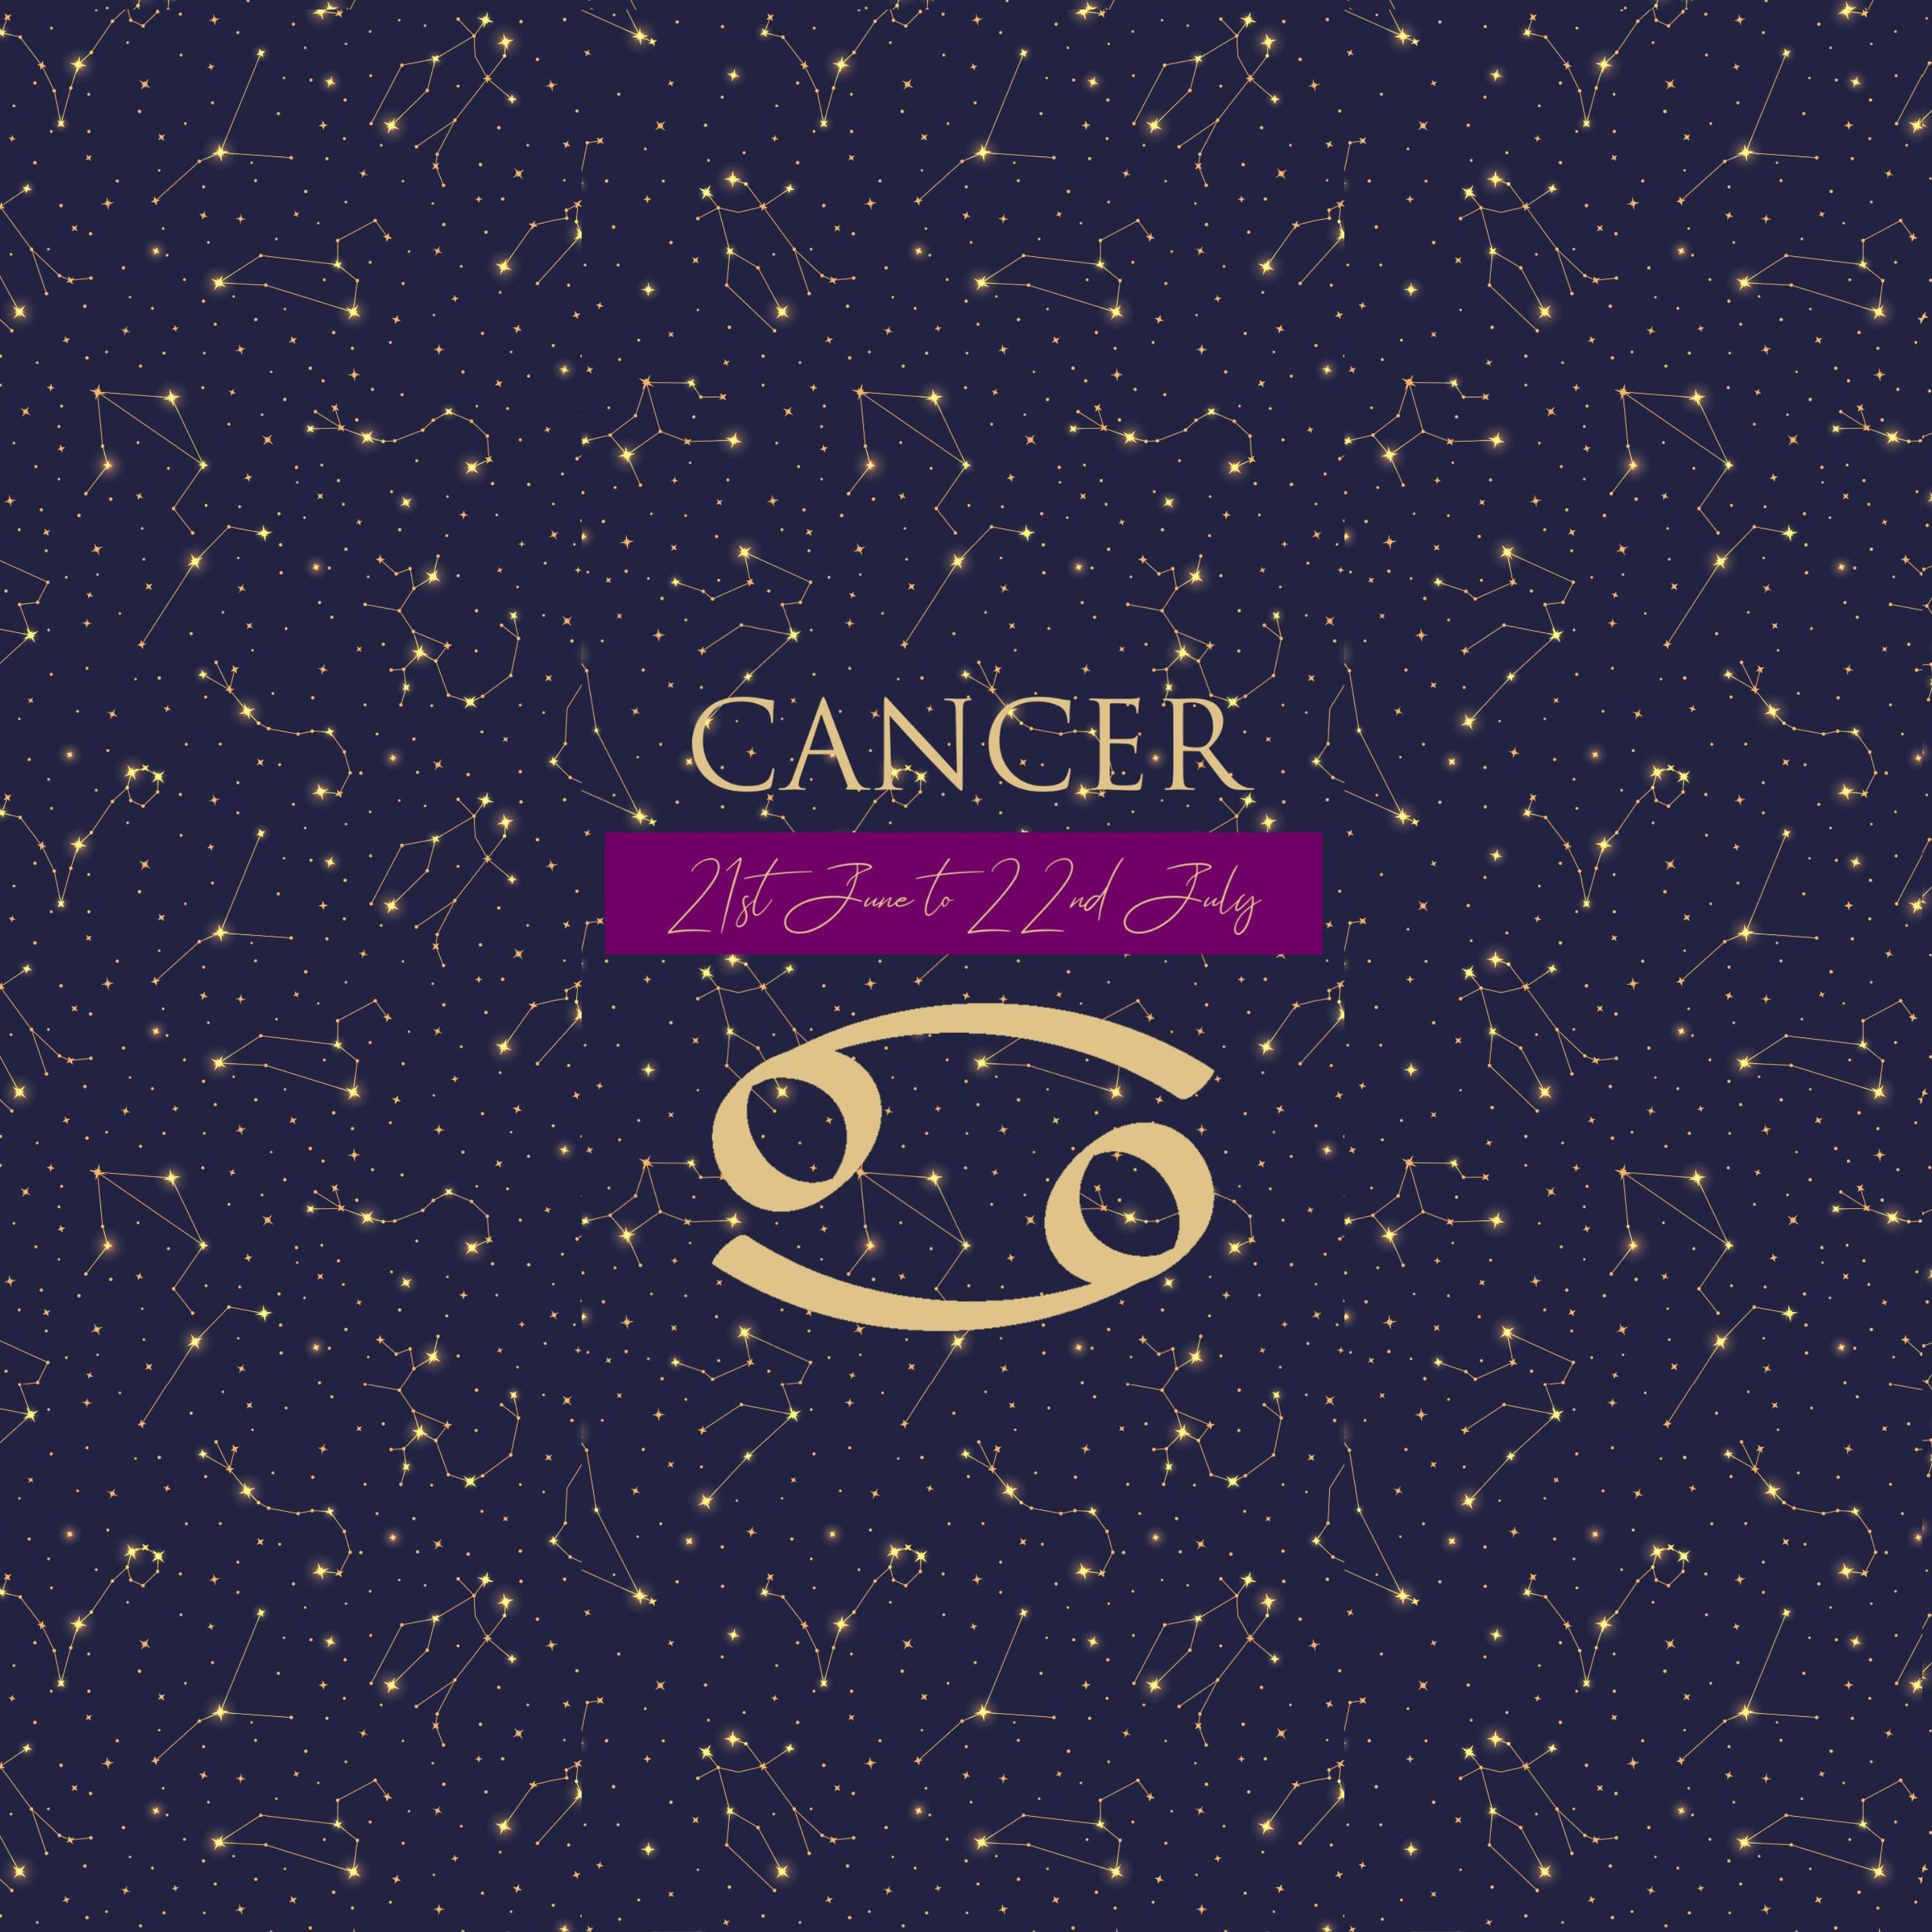 cancer blog post